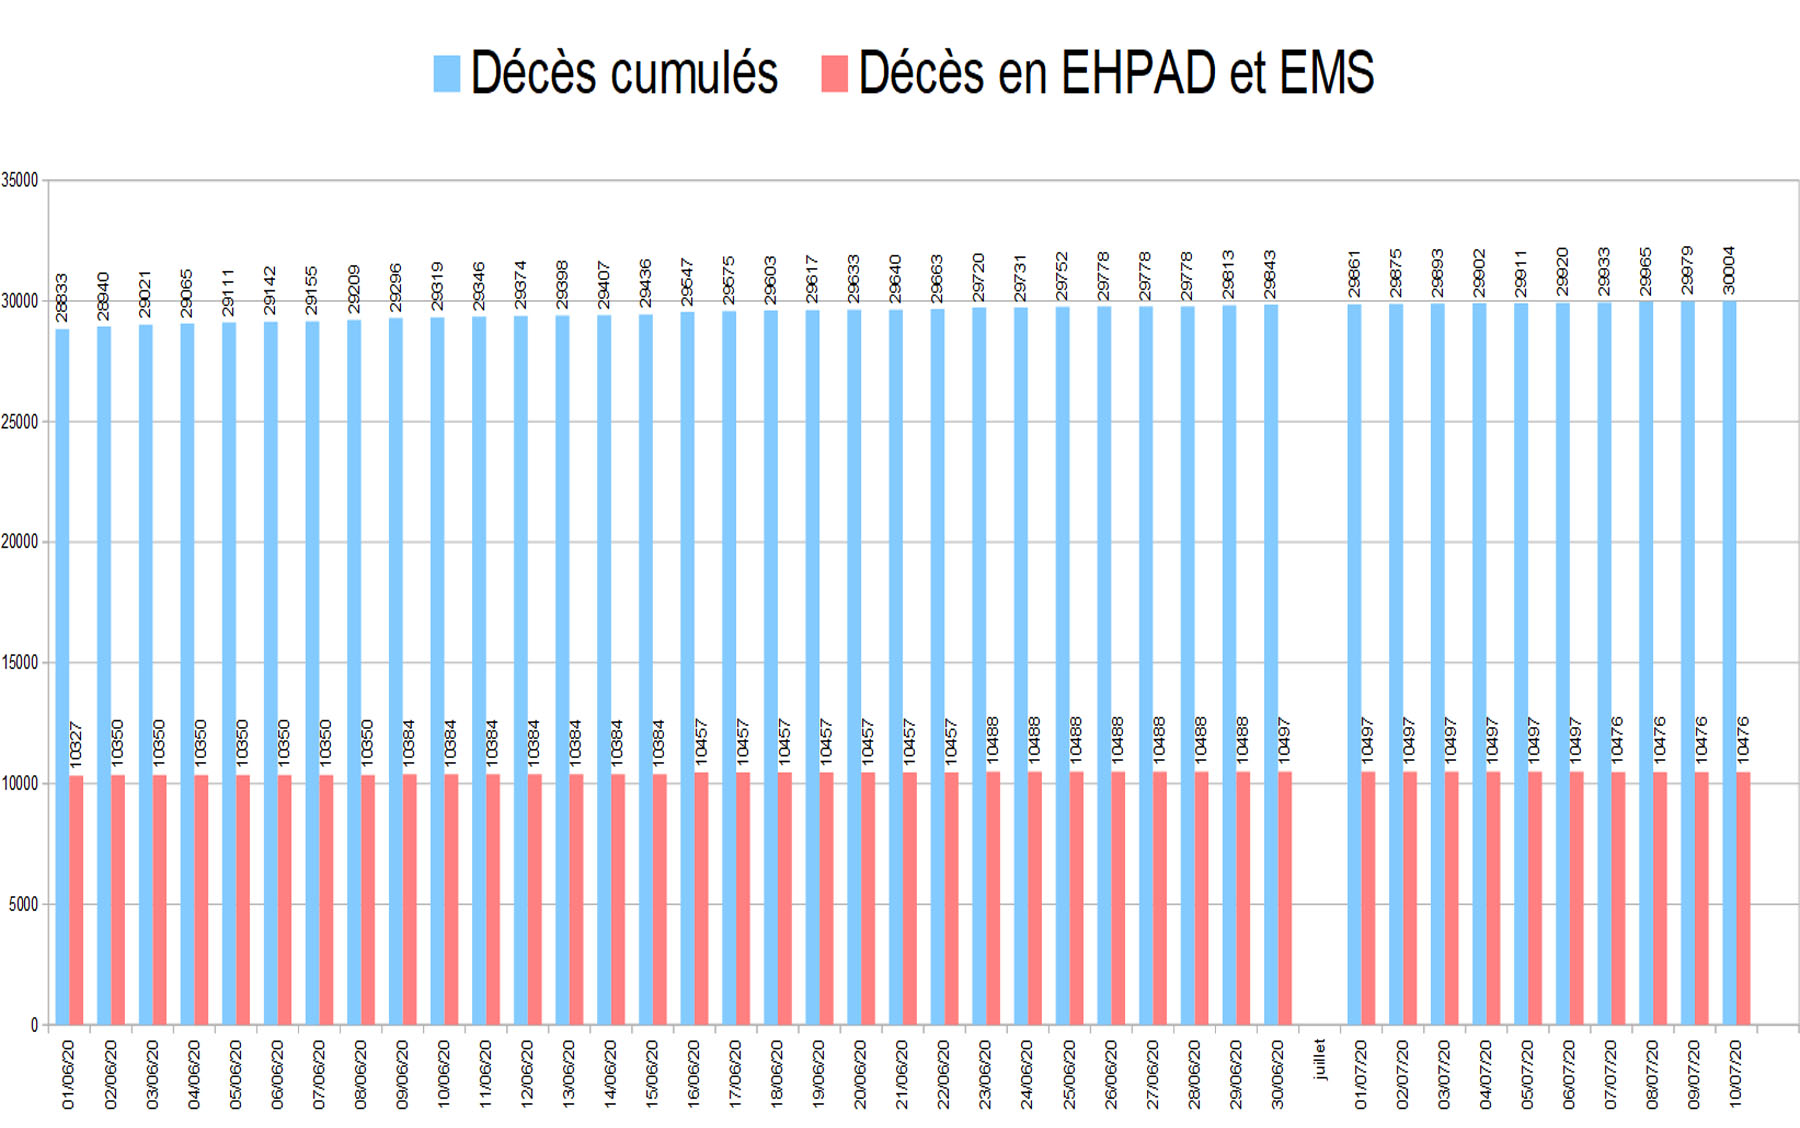 graphiquedepuijuin7_deces cumules EHPAD et EMS.jpg